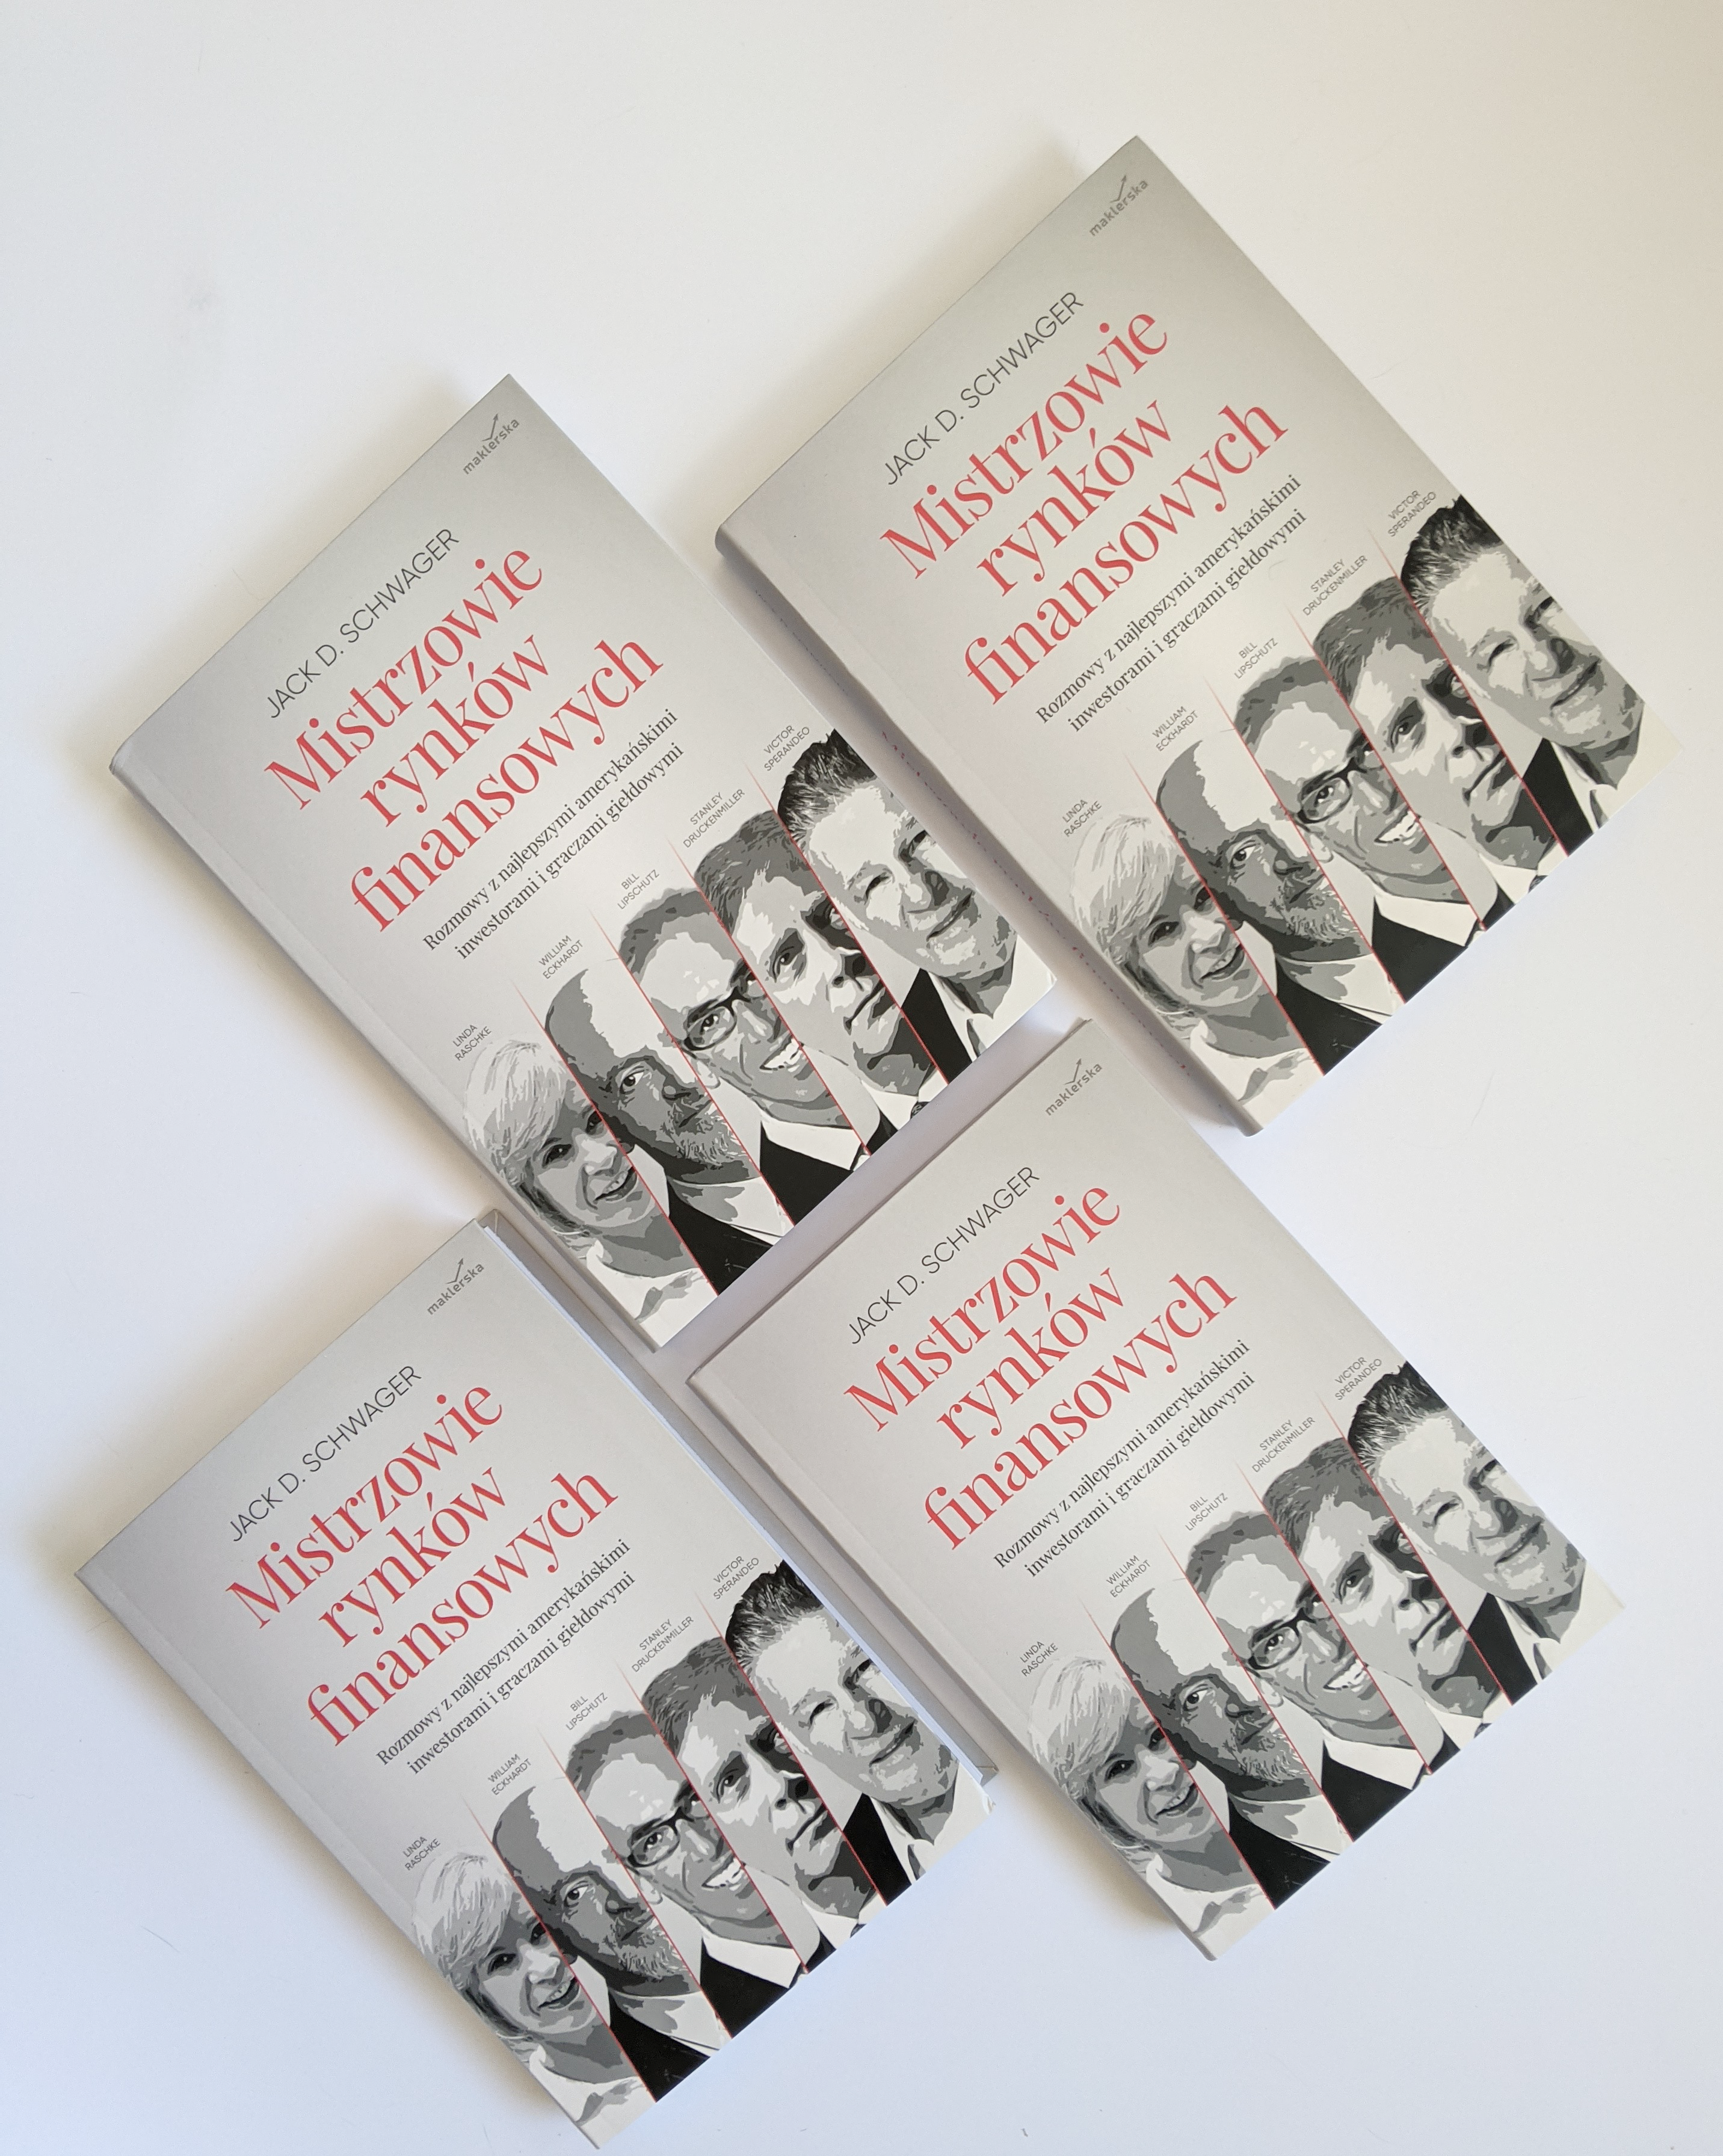 Książka Jacka D. Schwagera “Mistrzowie rynków finansowych” jest już dostępna w księgarni maklerska.pl